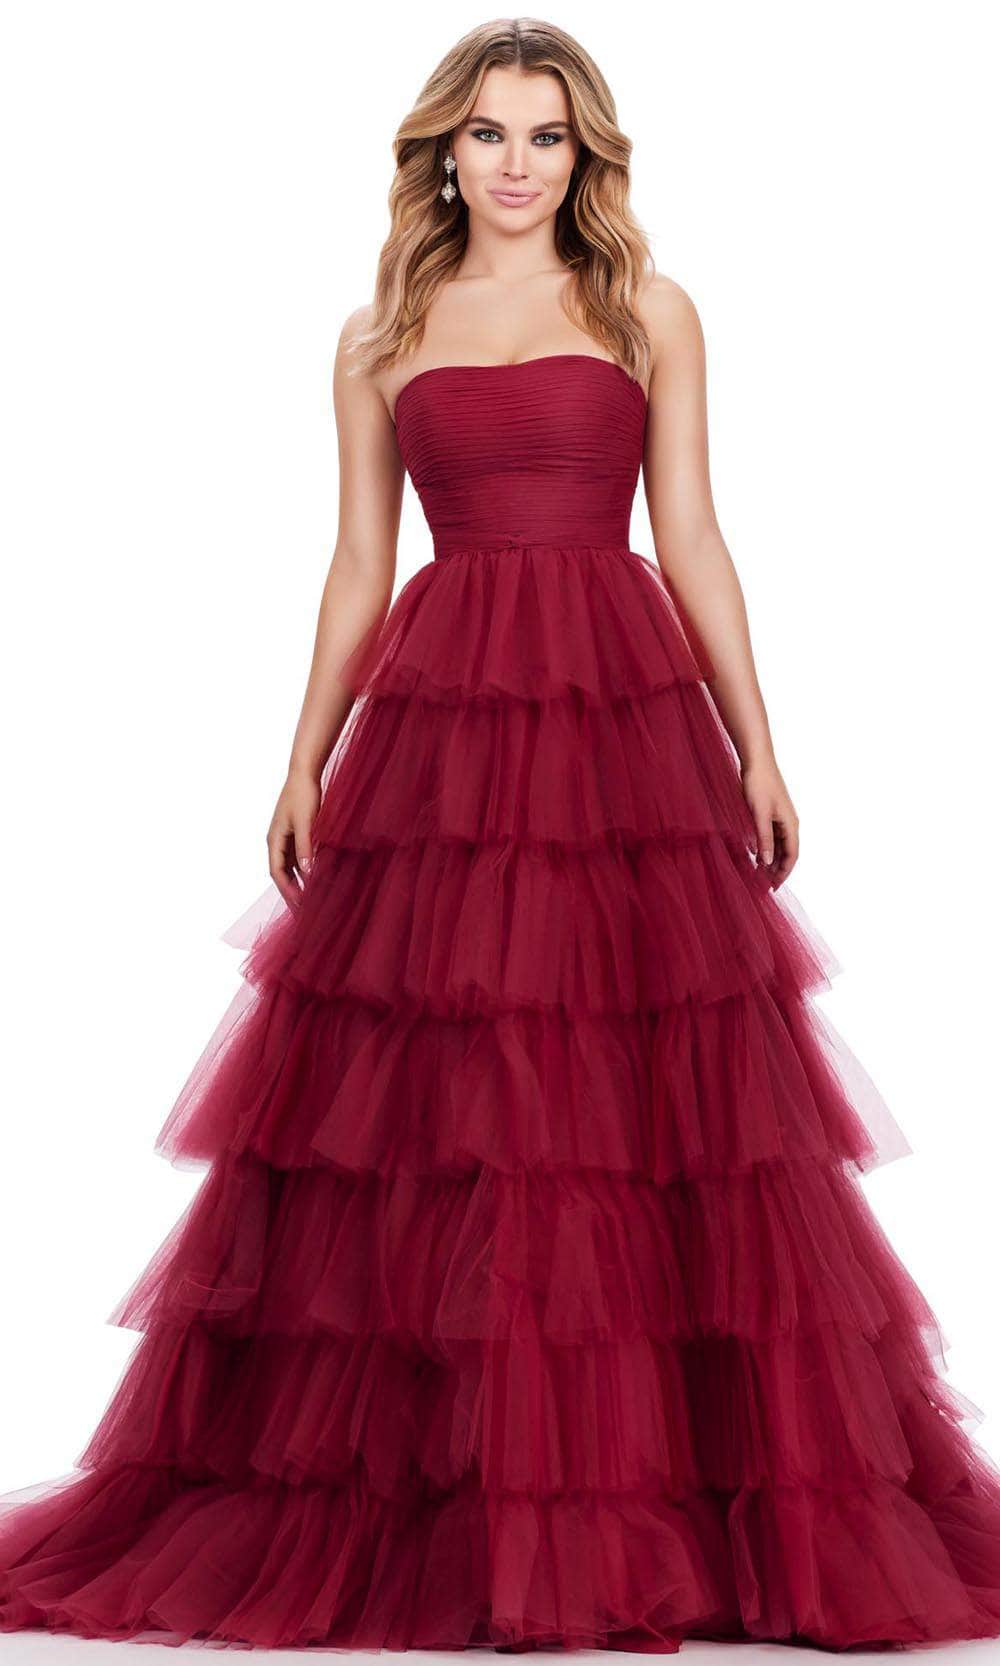 Ashley Lauren 11621 - Strapless Tiered Prom Dress 00 /  Burgundy